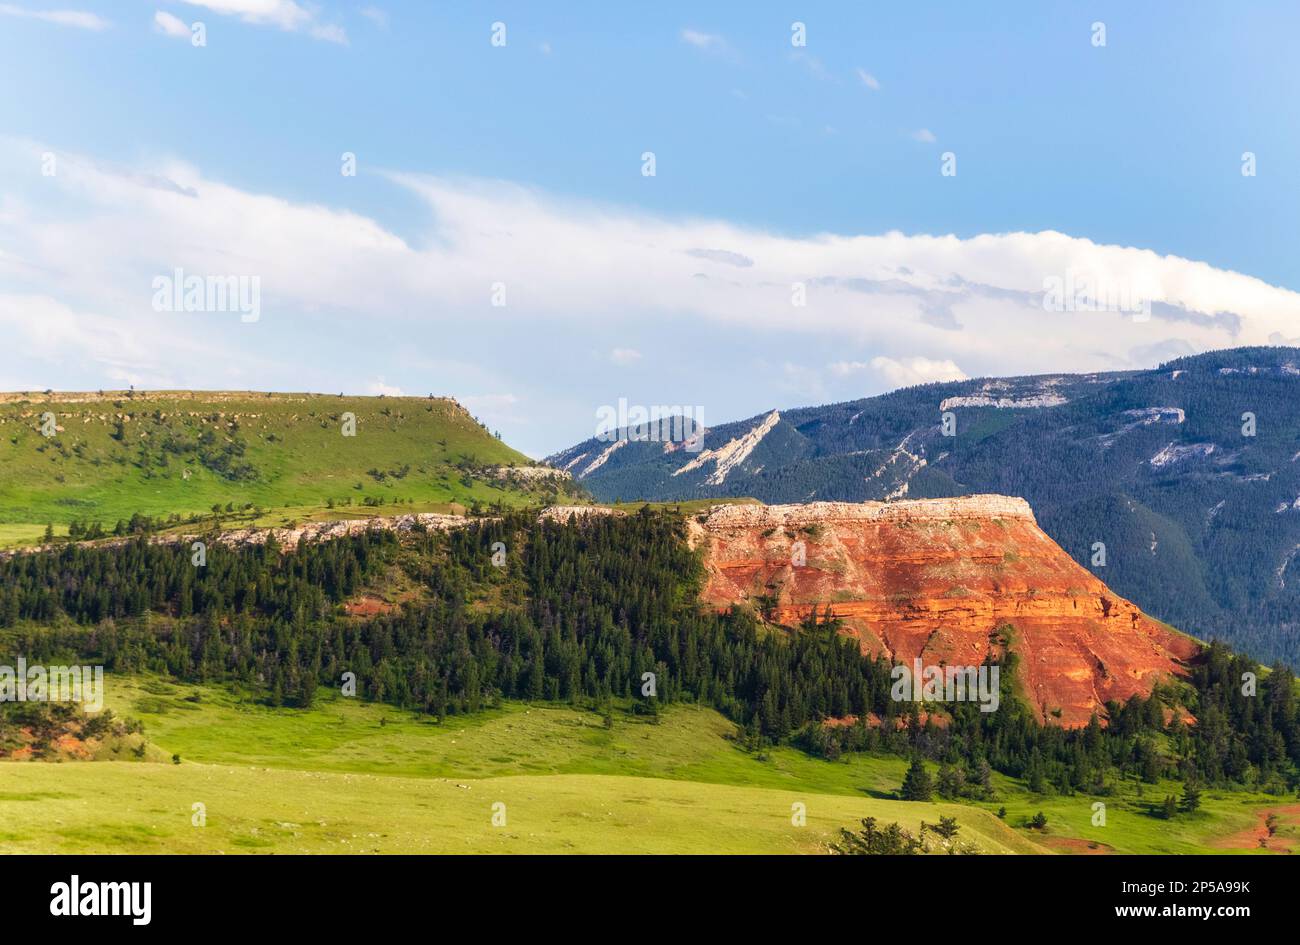 Stratificato di roccia rossa che fronteggia una valle verde e montagne ricoperte di alberi lungo l'autostrada Capo Joseph in un paesaggio del Wyoming Foto Stock